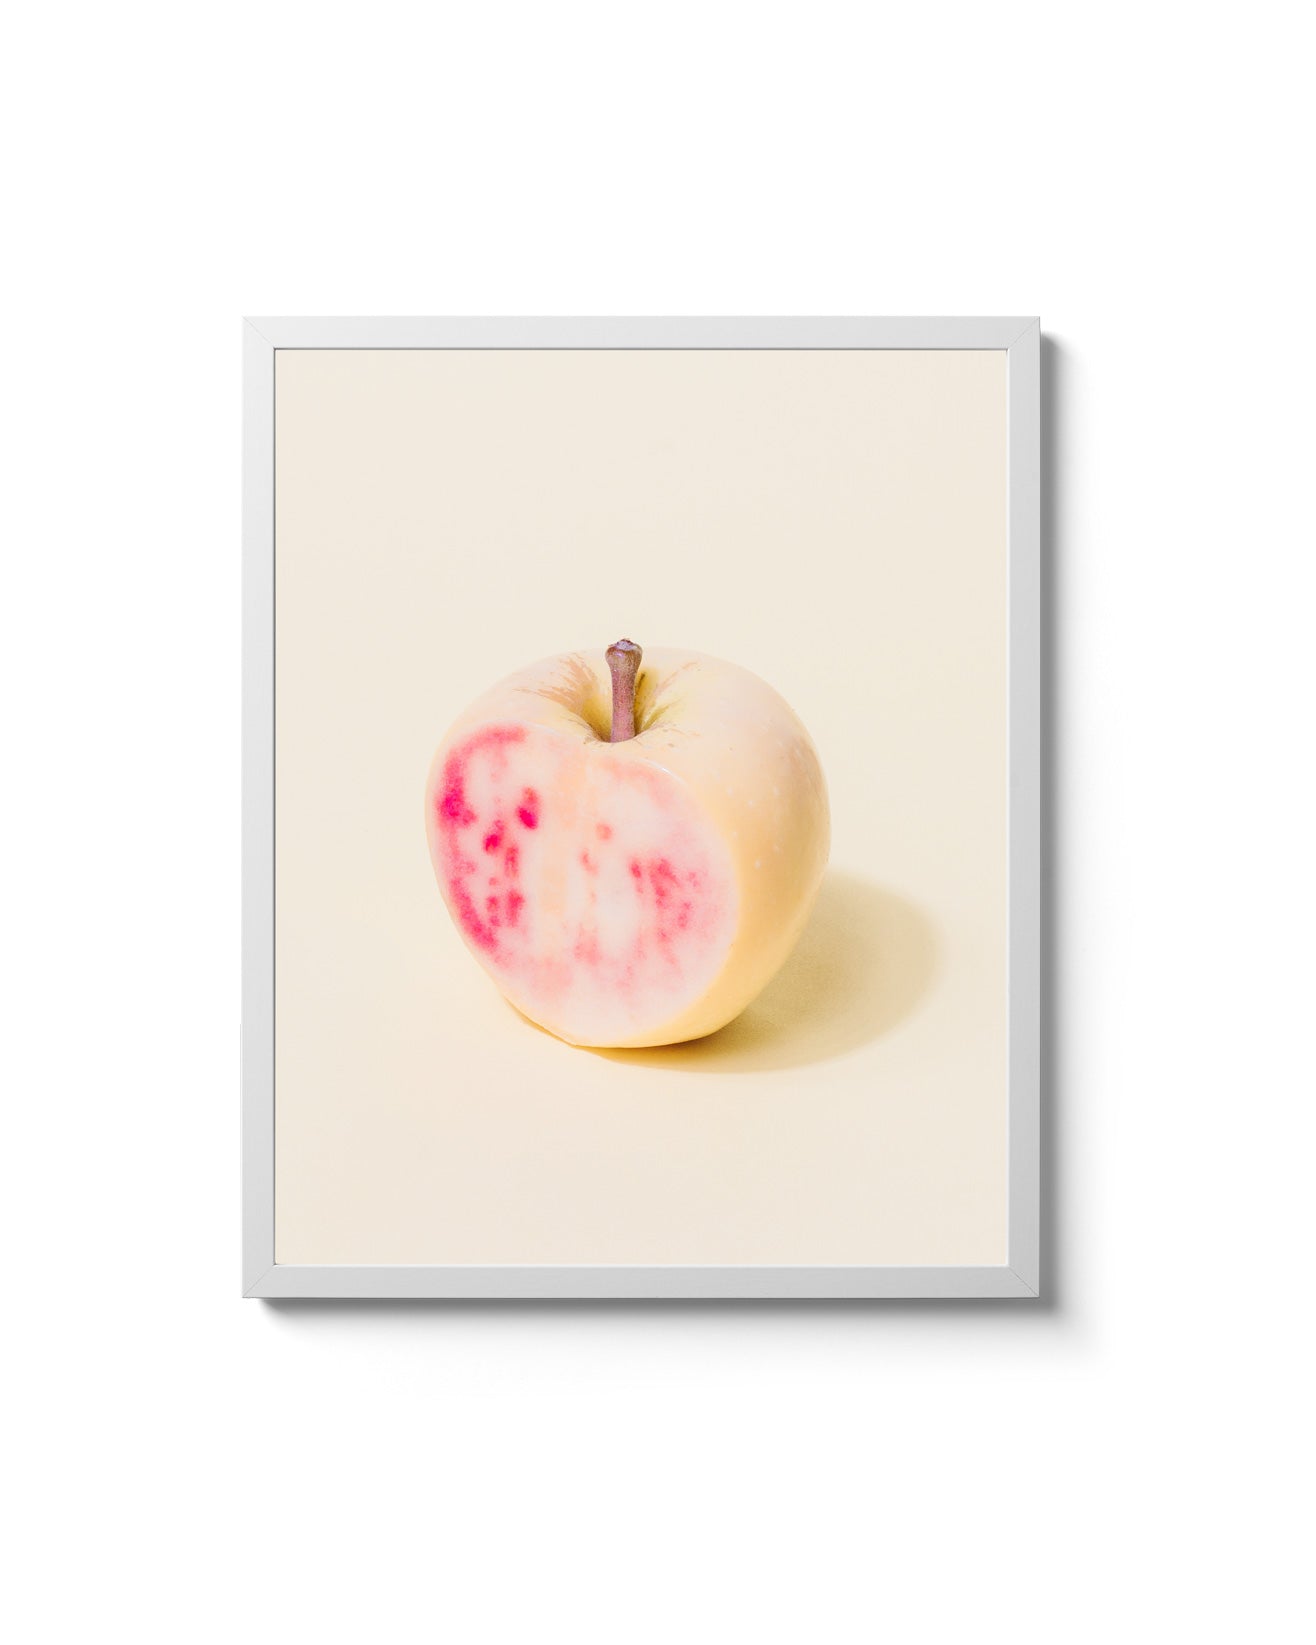 pink pearl apples